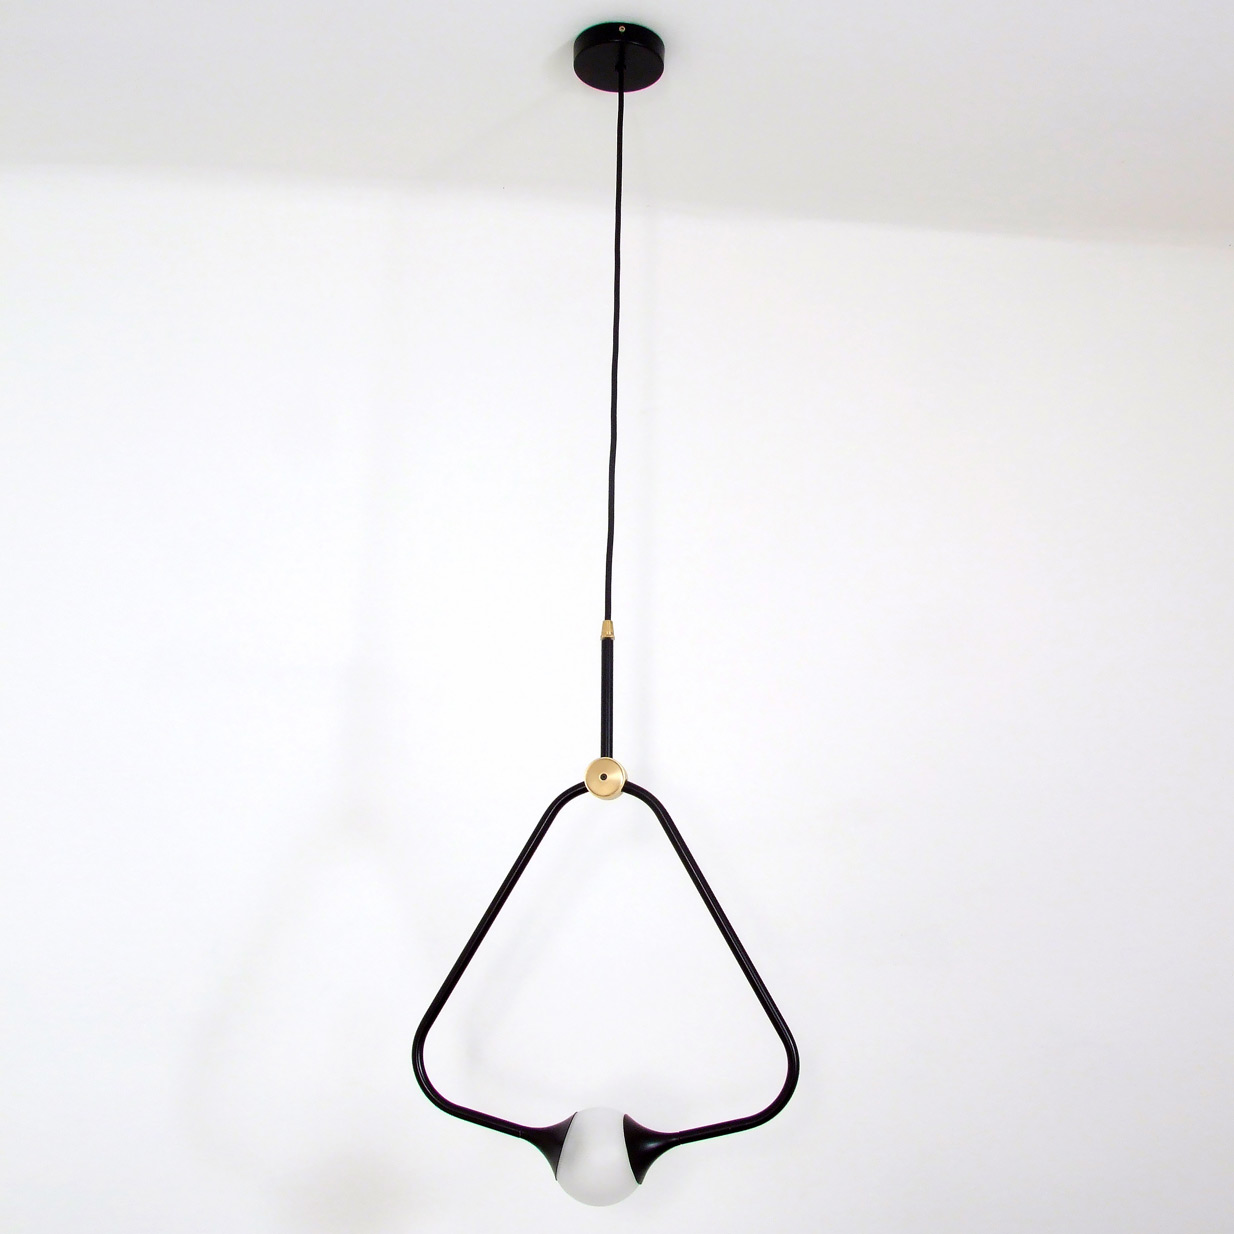 Extravagante Design-Pendelleuchte mit Glaskugel MEDALLION: Extravagante Triangel-Lampe mit Glaskugel, schwarz pulverbeschichtet